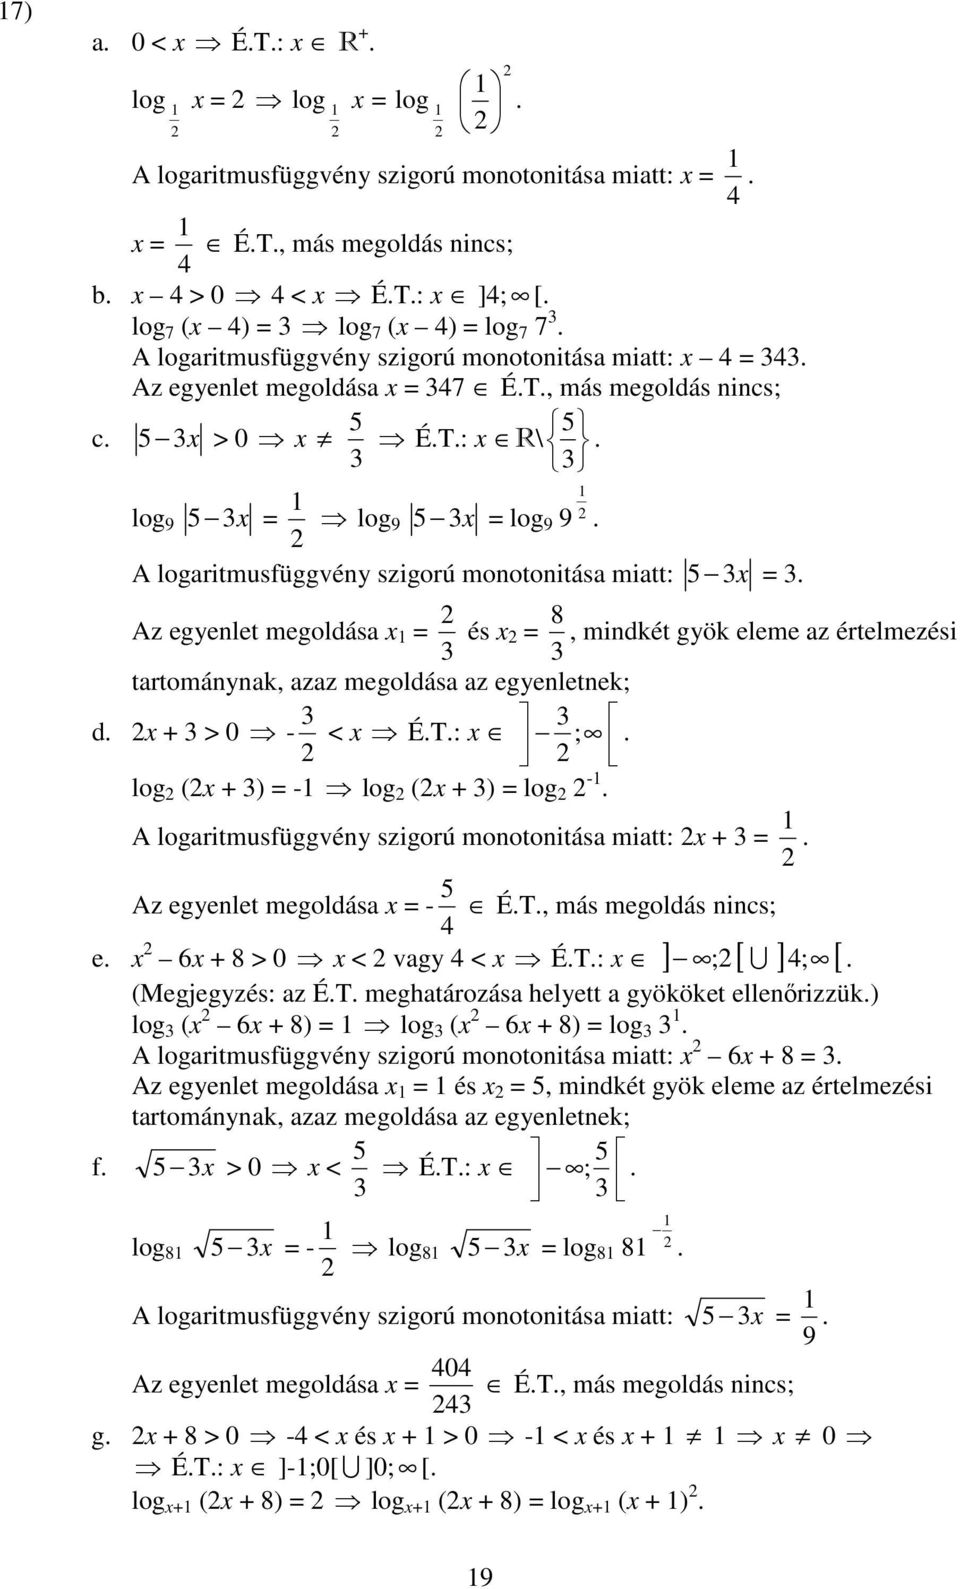 miatt: x = Az egyenlet megoldása x = és x = 8, mindkét gyök eleme az értelmezési tartománynak, azaz megoldása az egyenletnek d x + > 0 - < x ÉT: x log (x + ) = - log (x + ) = log - A